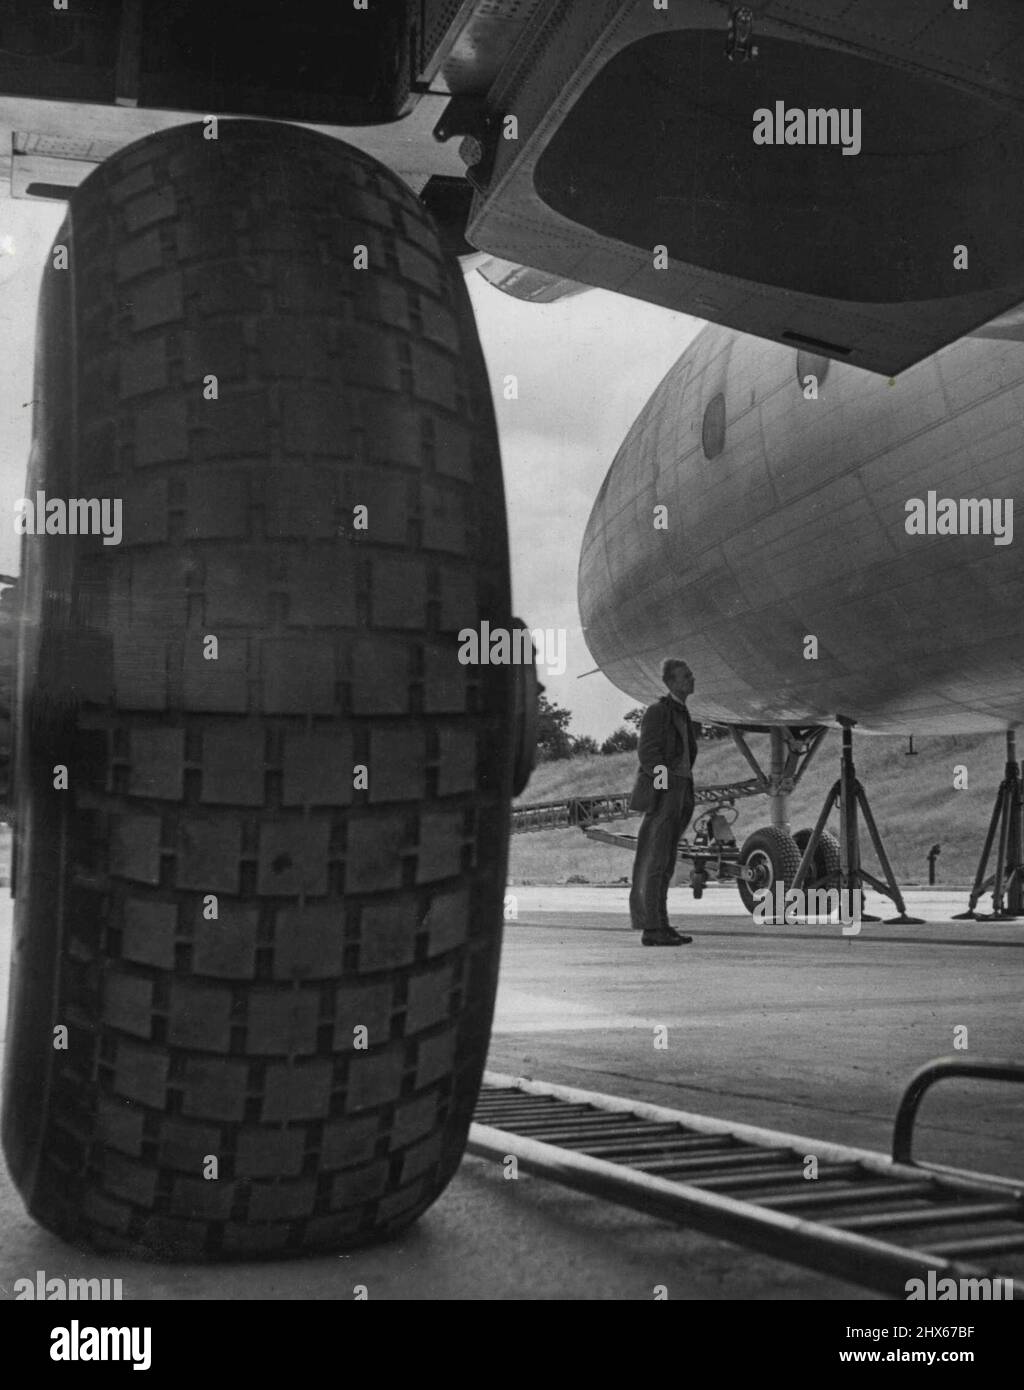 Wheel of Air Giant -- questa visione di una delle enormi ruote del carro del gigante aereo britannico da 125 tonnellate, Brabazon i, il più grande aereo terrestre del mondo, suggerisce con chiarezza sorprendente l'immensa dimensione del velivolo. Progettato per trasportare 100 passeggeri, il costo stimato del Brabazon è di circa £6.000.000. Settembre 14, 1948. Foto Stock